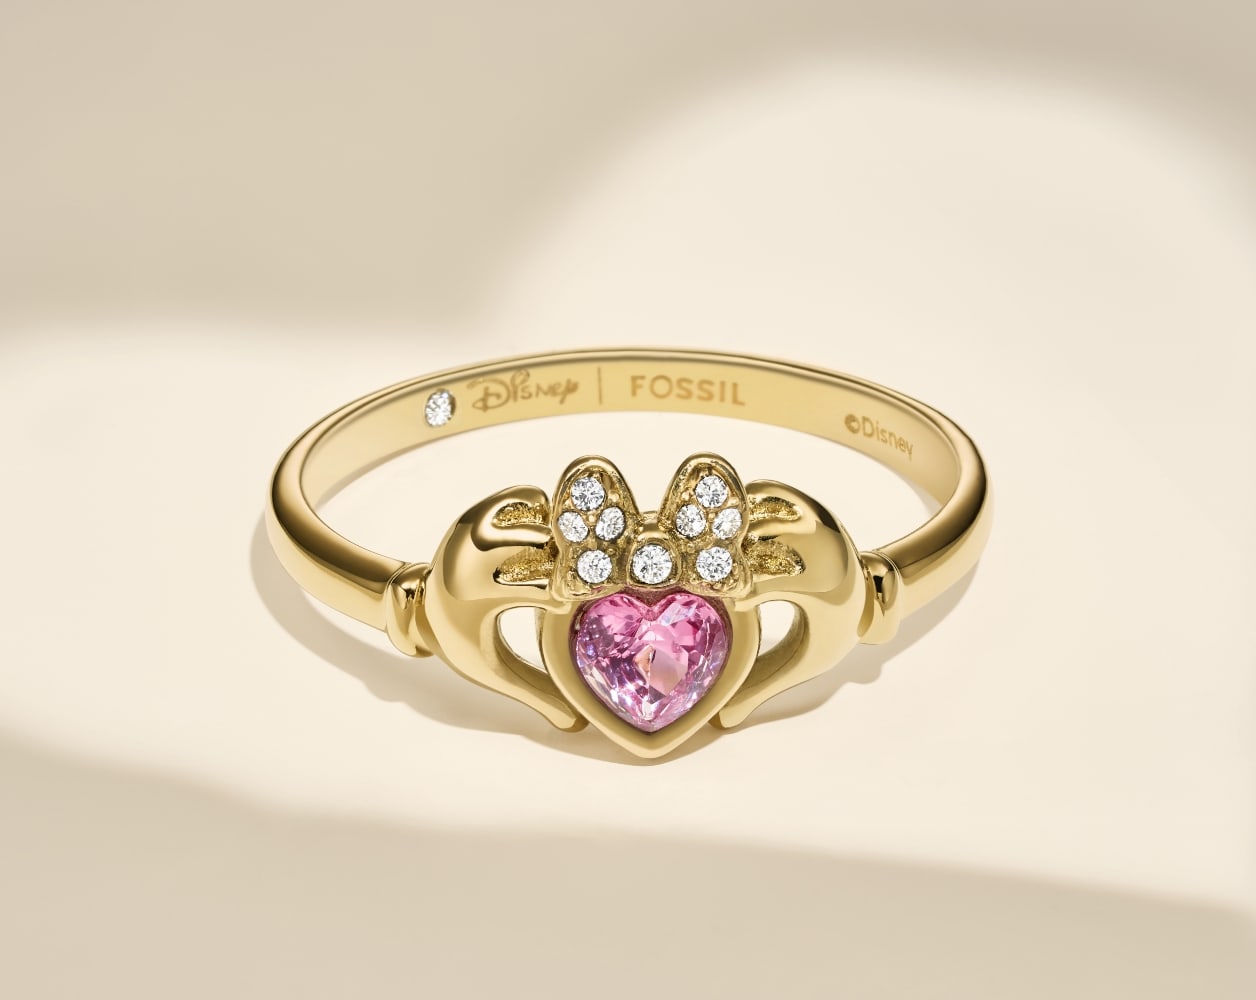 L’anneau ton or Claddagh Disney | Fossil avec un cristal en forme de cœur rose.